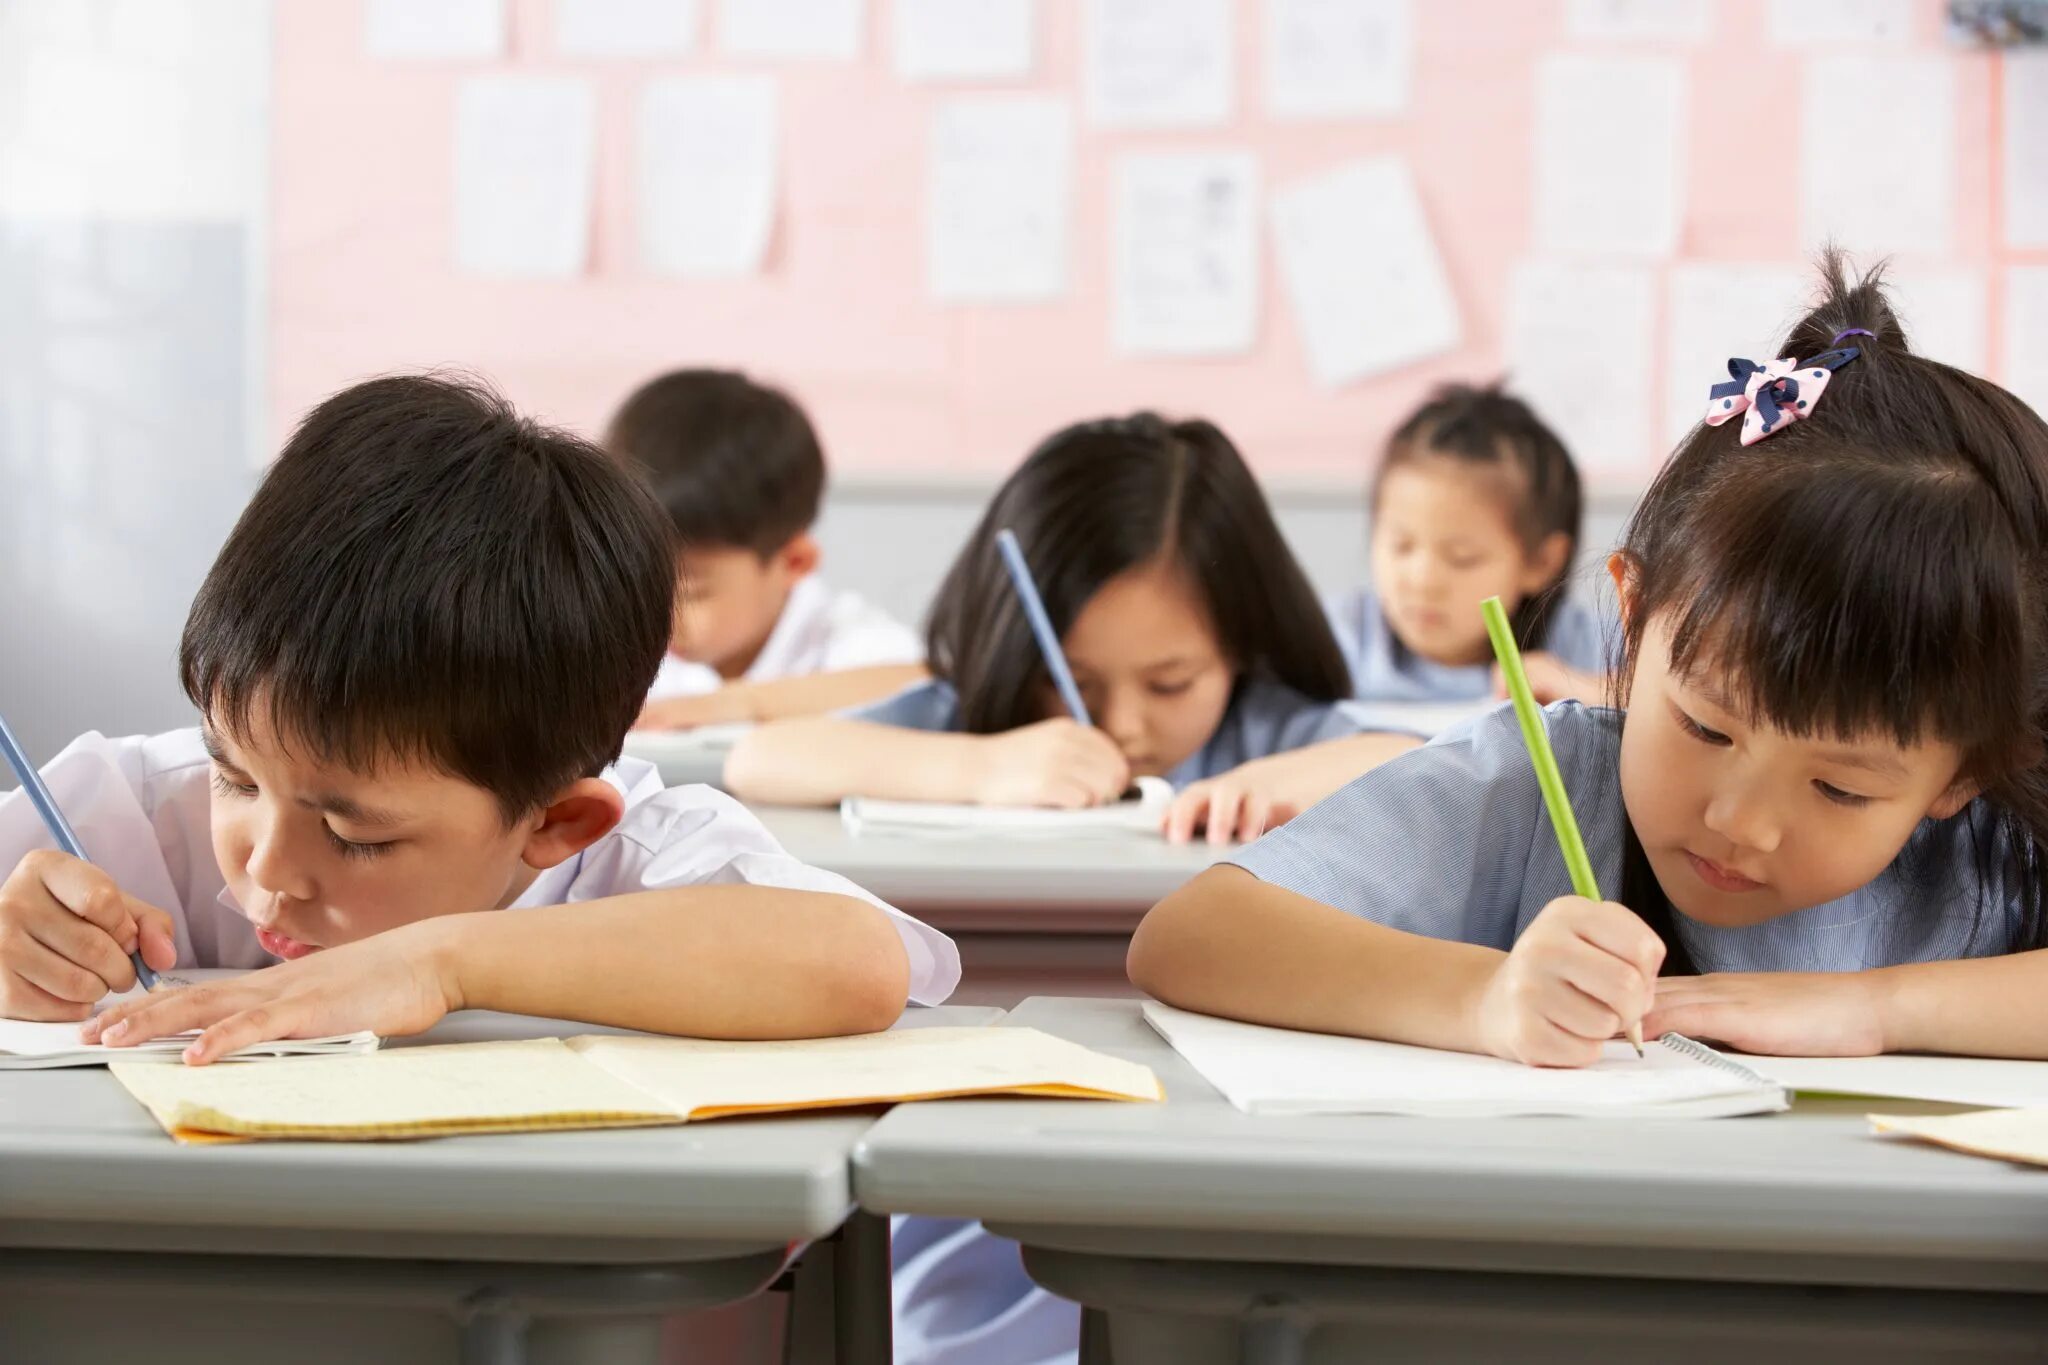 I study at school. Школьник спит на уроке Азия. Япония спят школьники. Как учатся китайские школьники с плохим зрением.